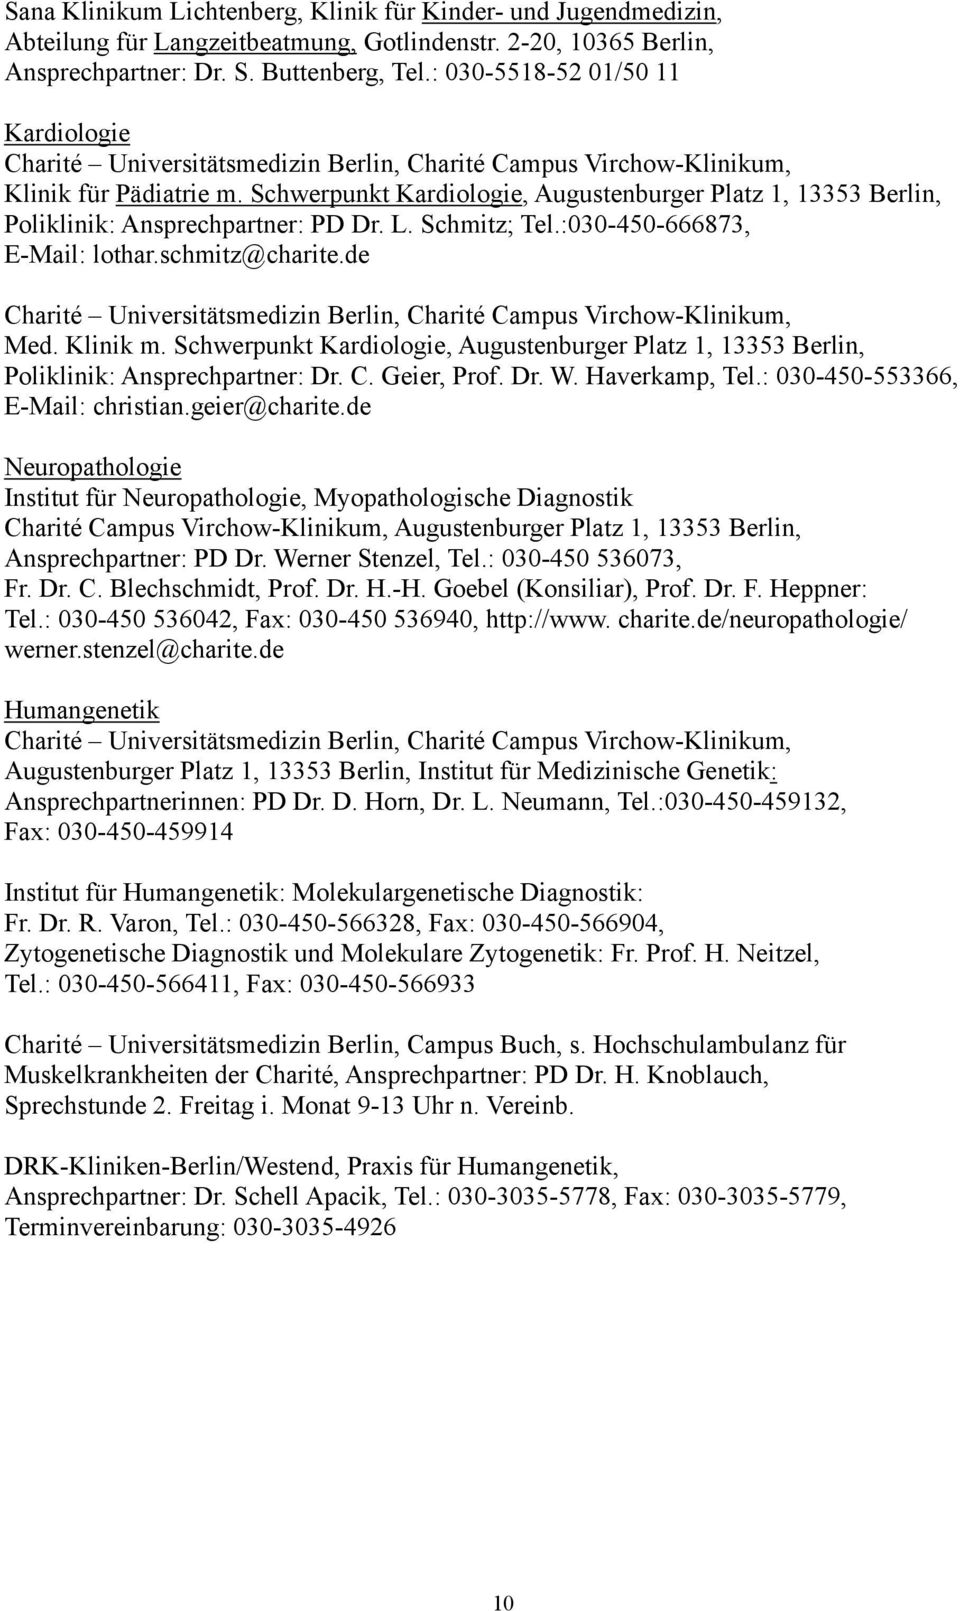 Schwerpunkt Kardiologie, Augustenburger Platz 1, 13353 Berlin, Poliklinik: Ansprechpartner: PD Dr. L. Schmitz; Tel.:030-450-666873, E-Mail: lothar.schmitz@charite.